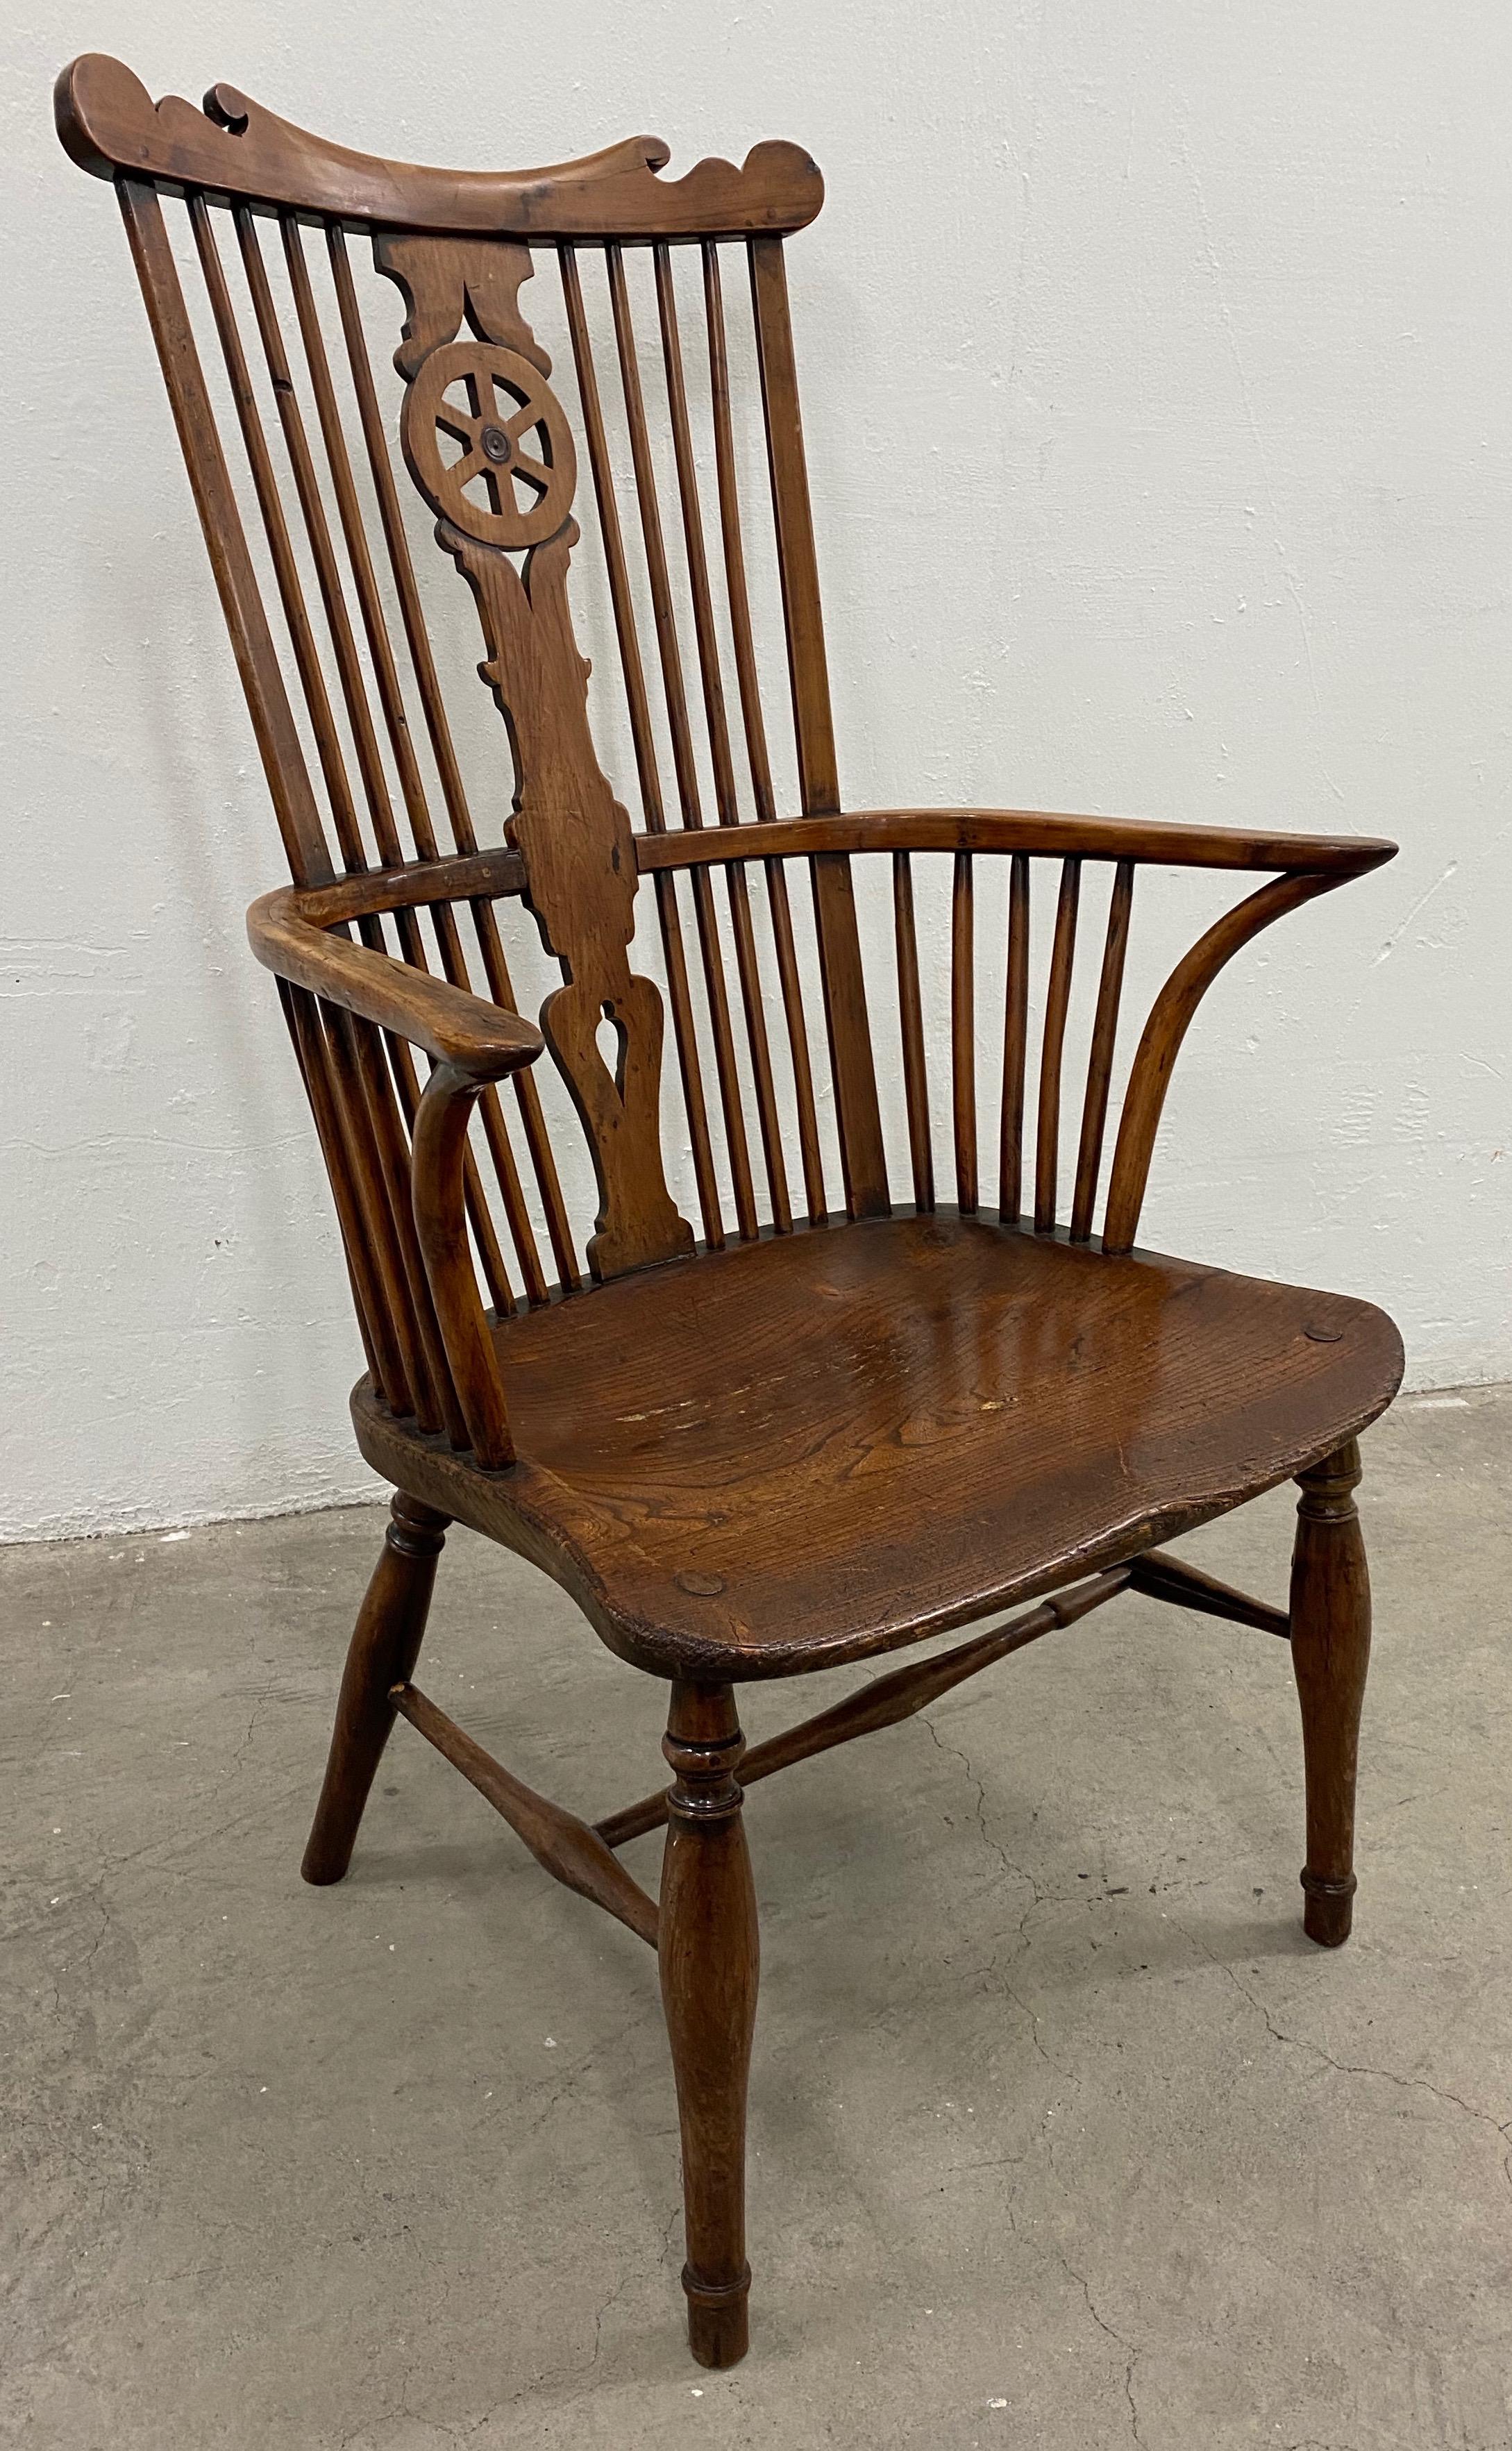 Europäischer Windsor-Sessel aus Eibenholz, 19. Jahrhundert

Feiner handgeschnitzter Windsor-Sessel mit hoher Rückenlehne. Der Stuhl ist aus massivem europäischem (gewöhnlichem) Eibenholz gefertigt.

Der Stuhl misst 26,5